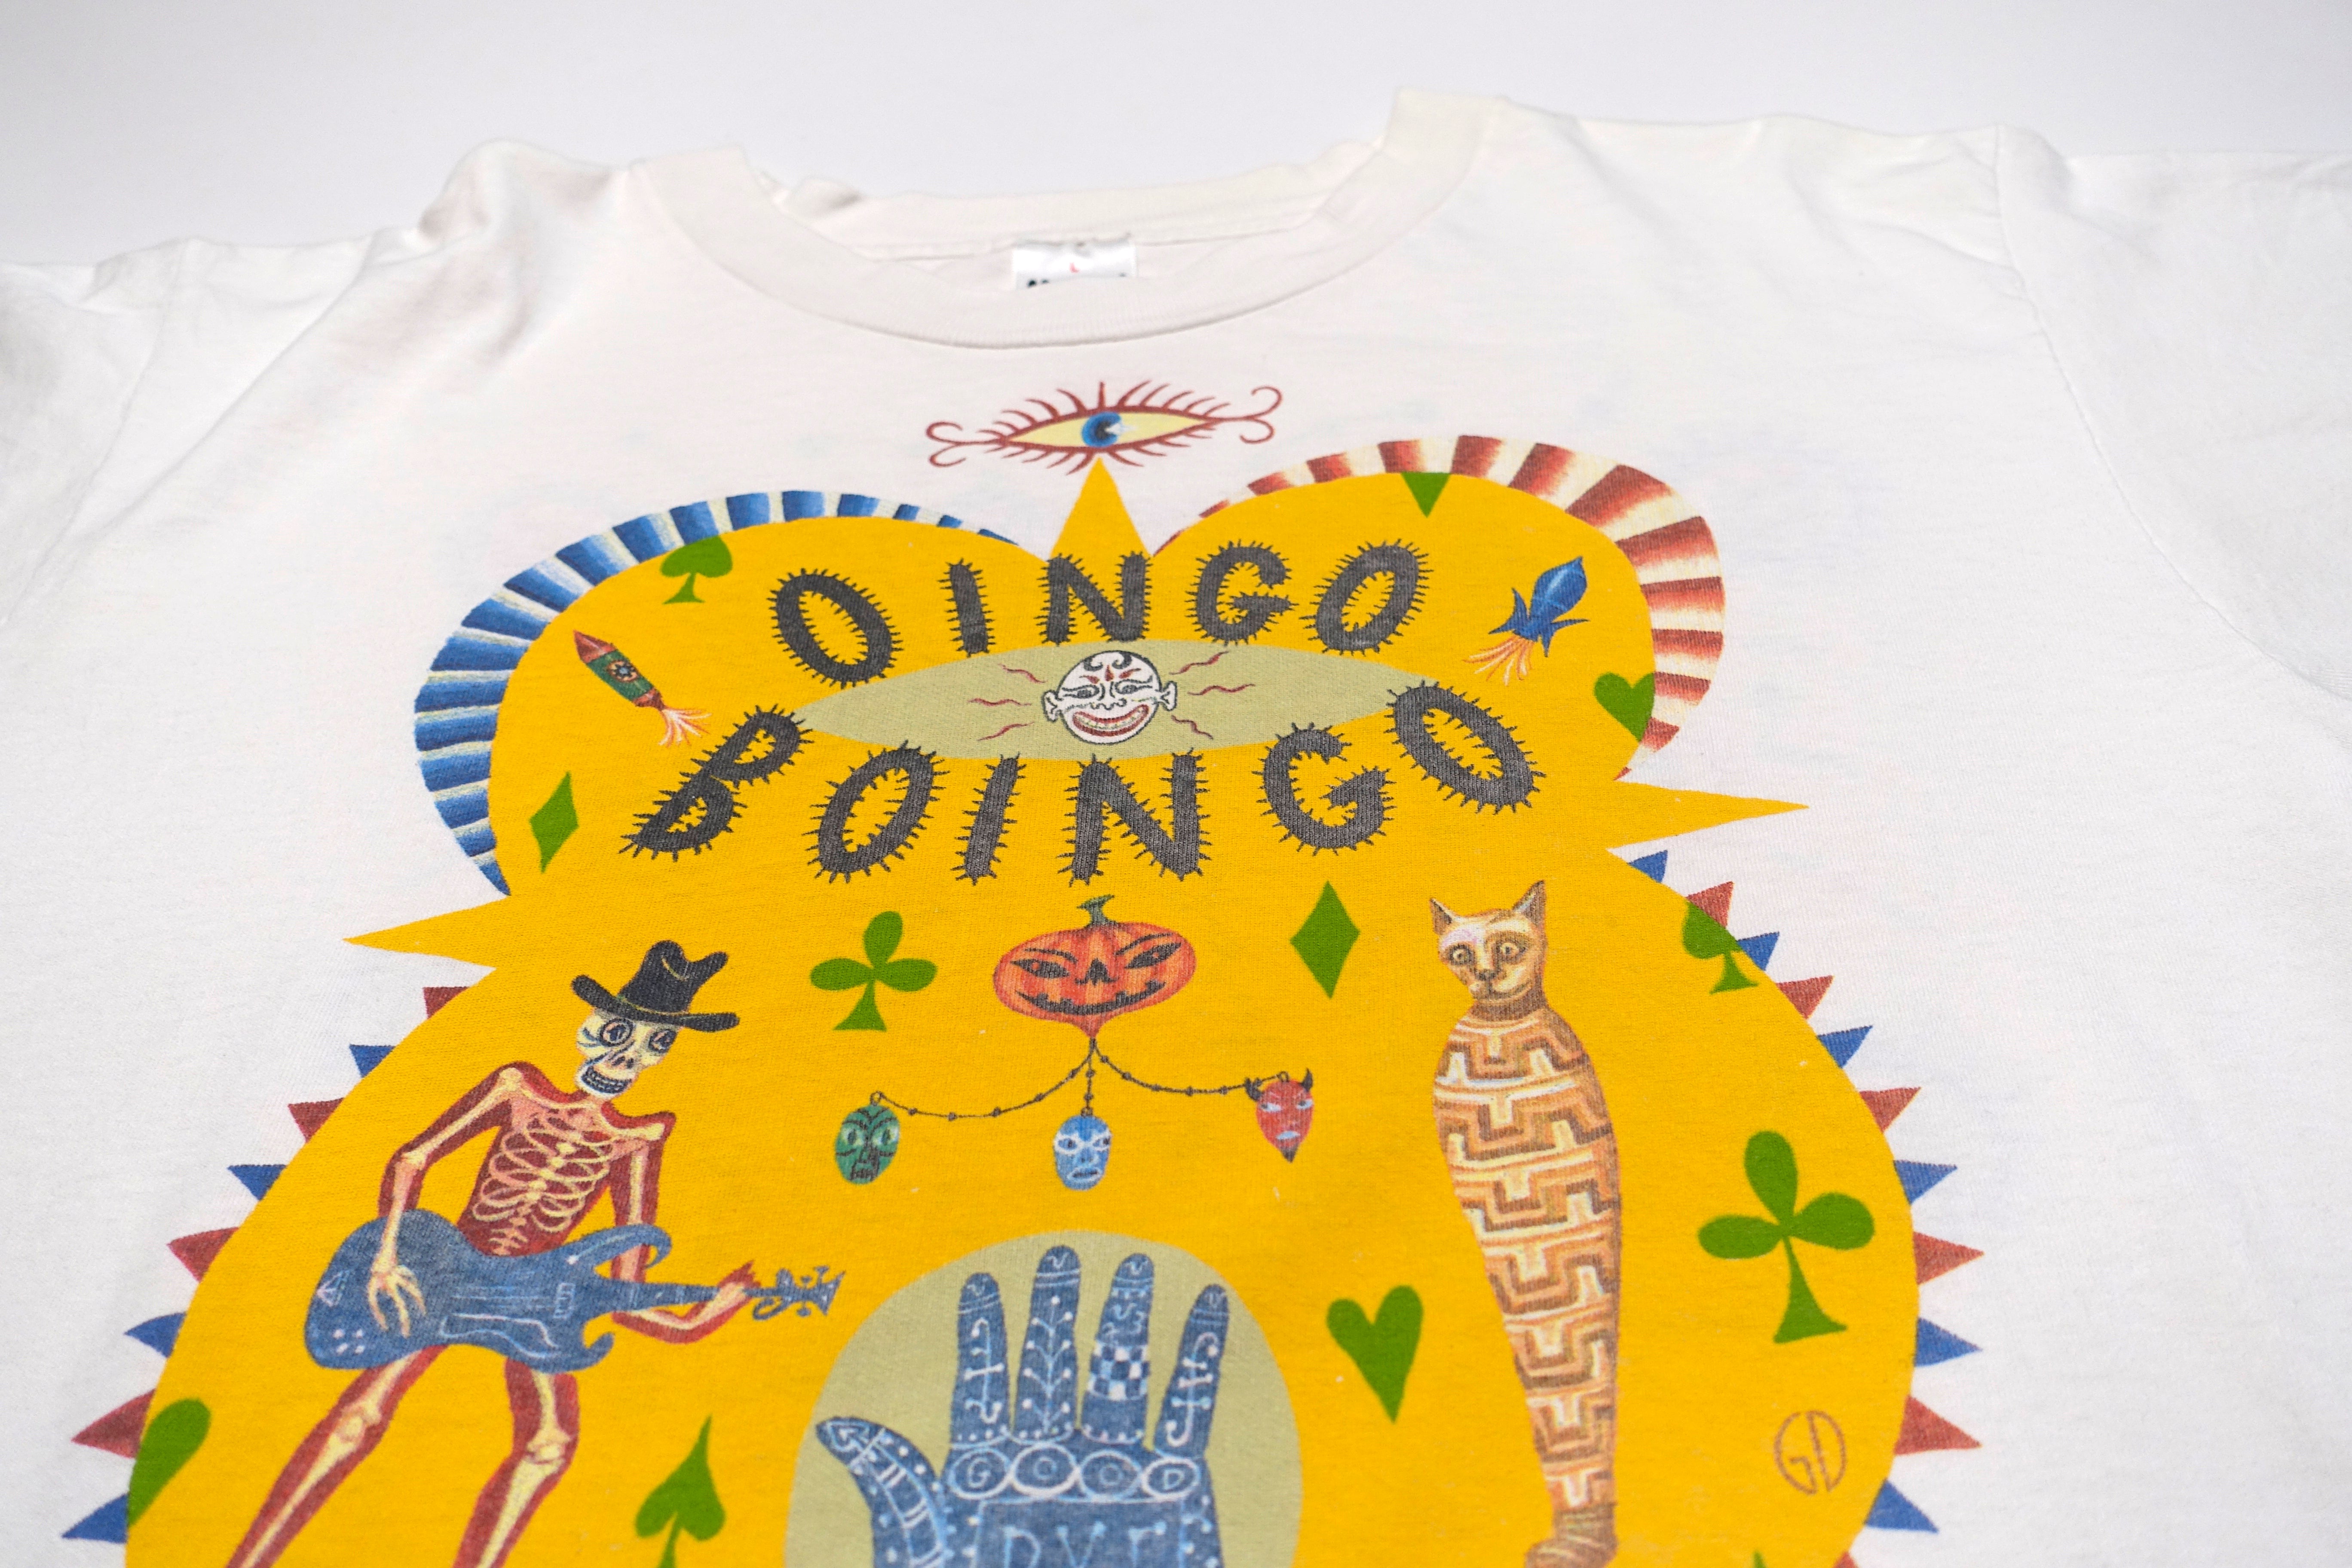 Oingo Boingo – Dia De Los Muertos 1995 Tour Shirt Size Large